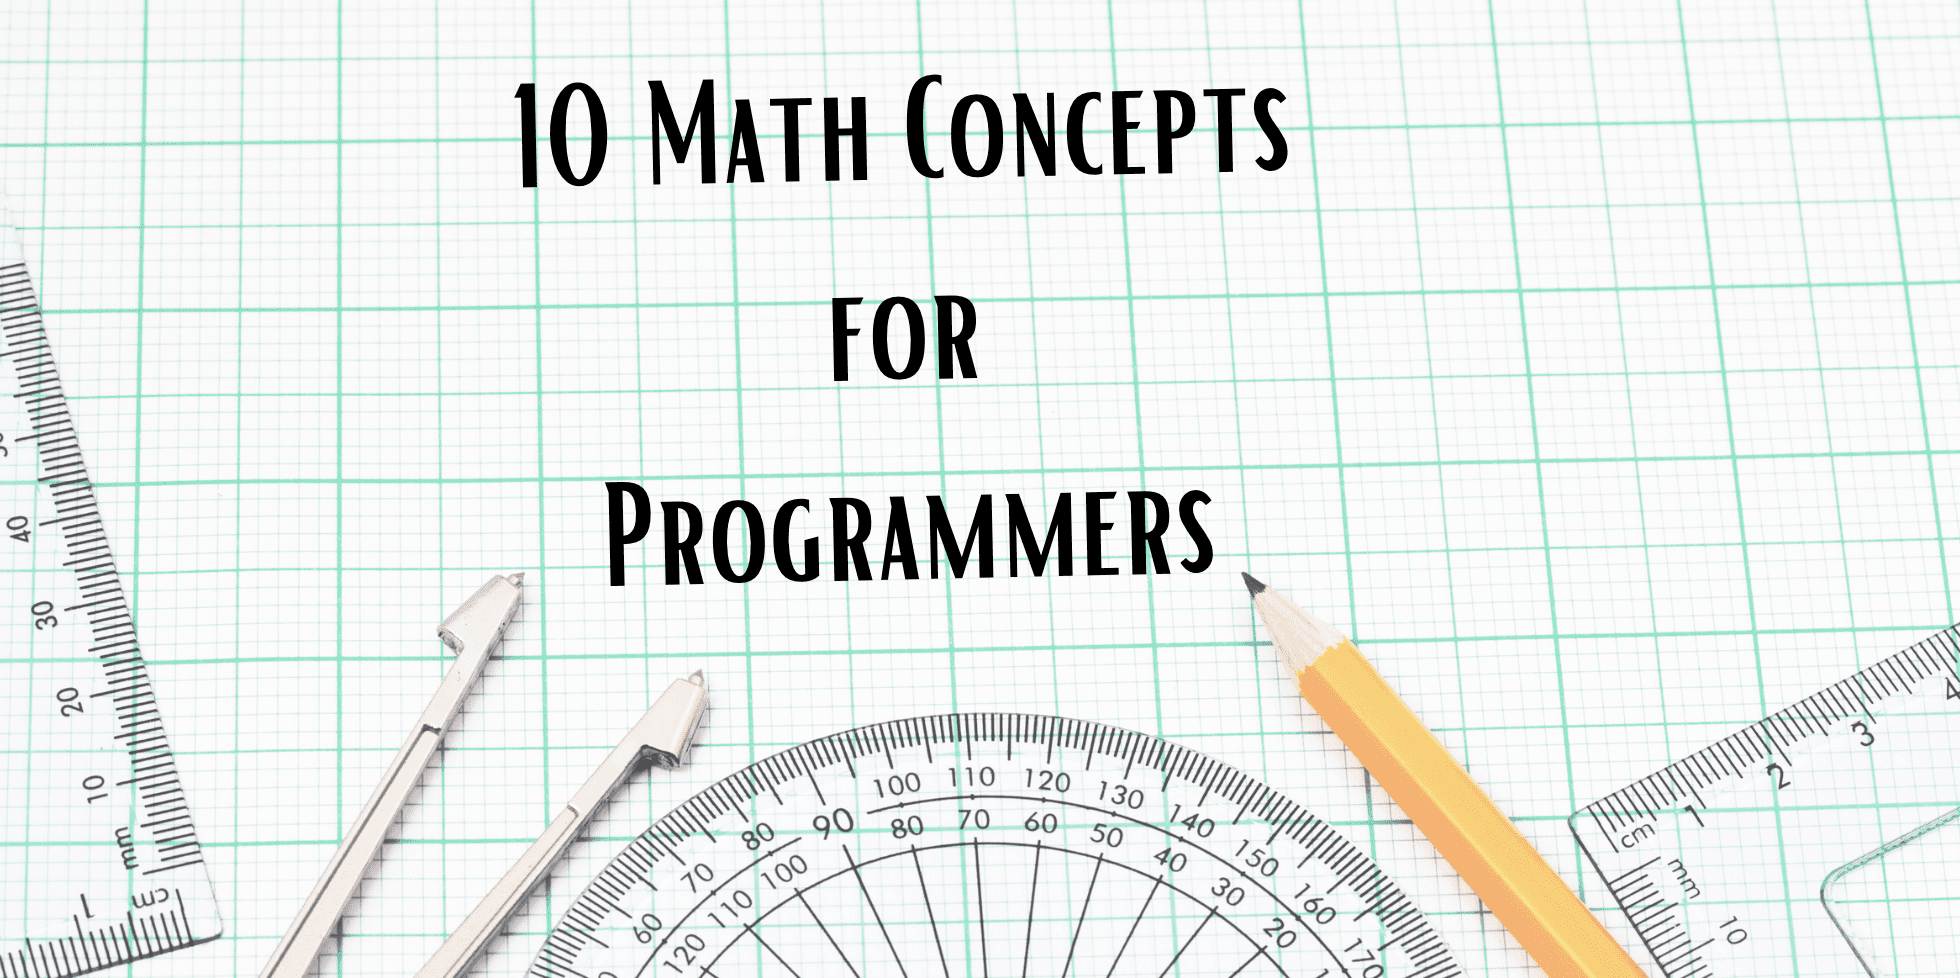 10 conceptos matemáticos para programadores - KDnuggets